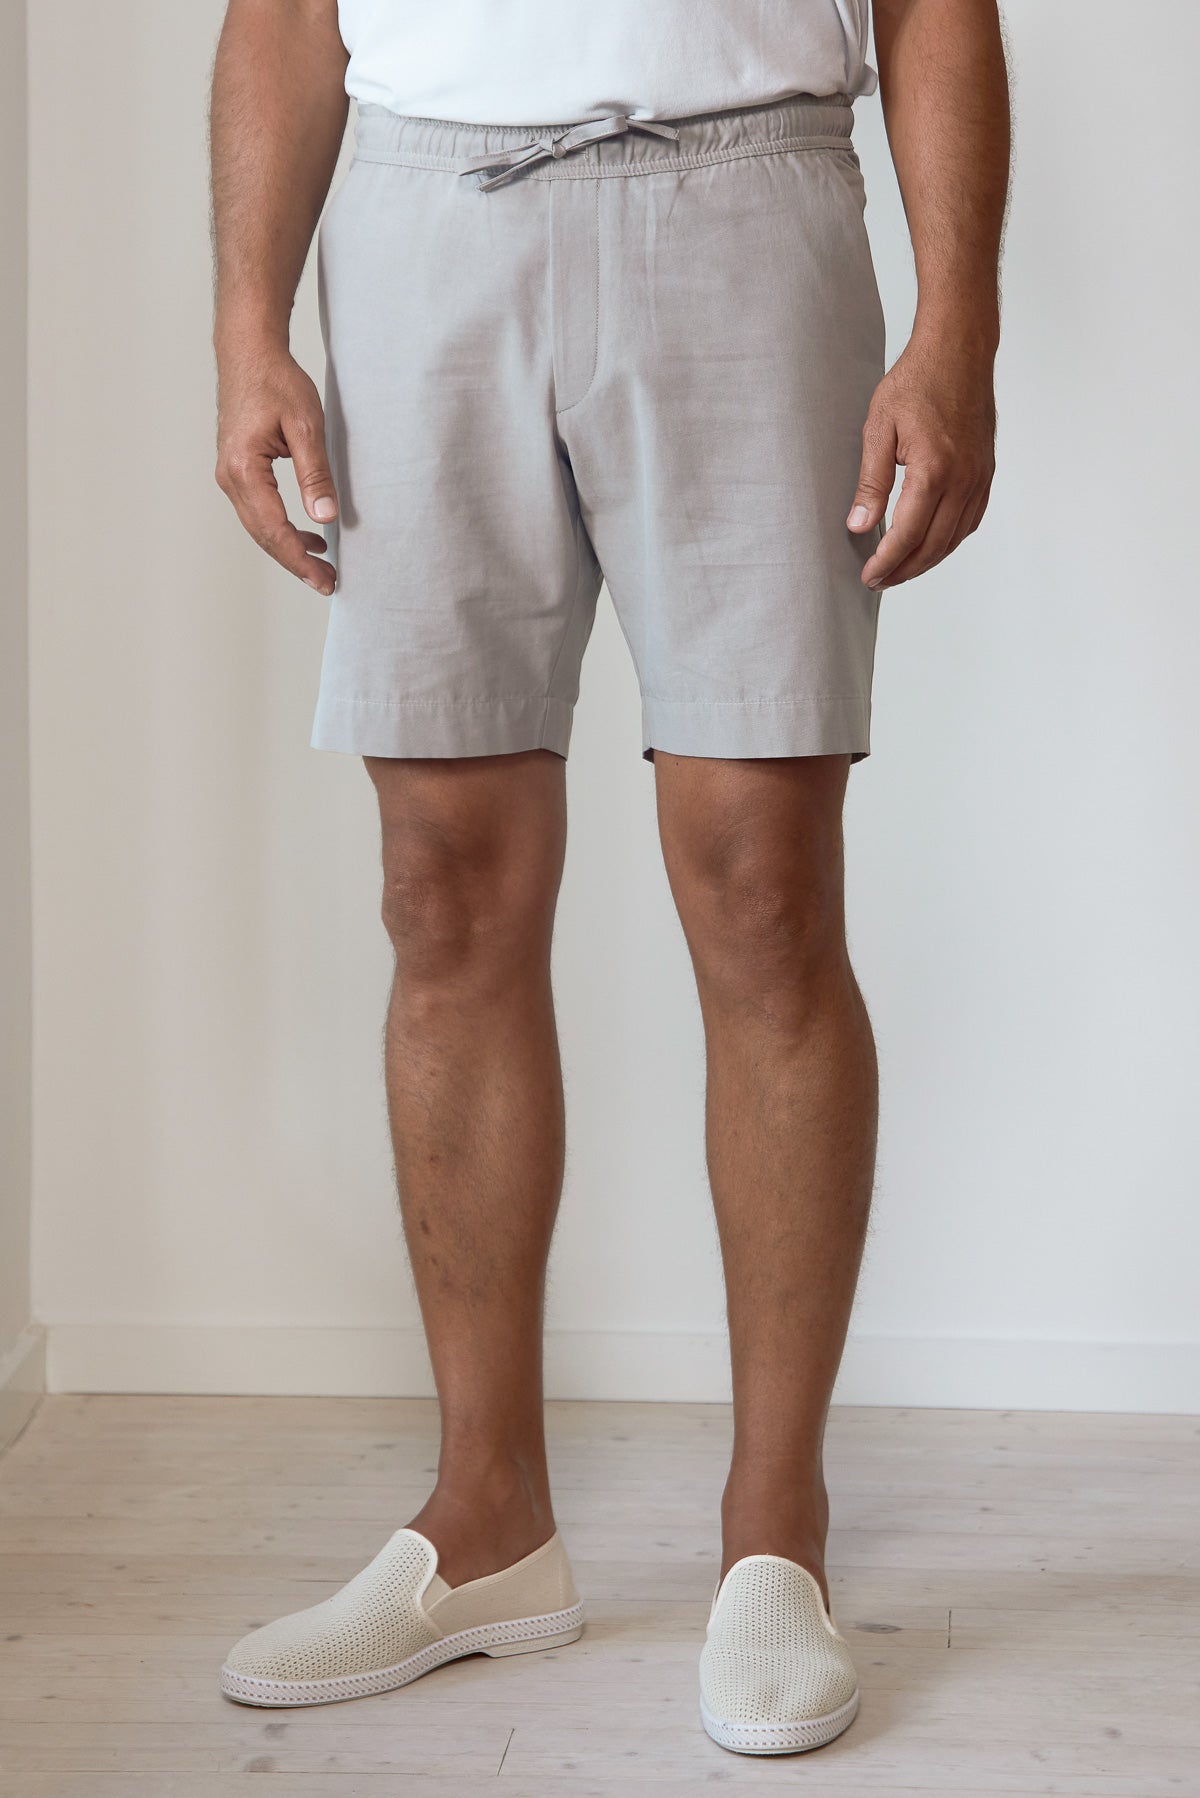 JIM shorts stone grey tencel